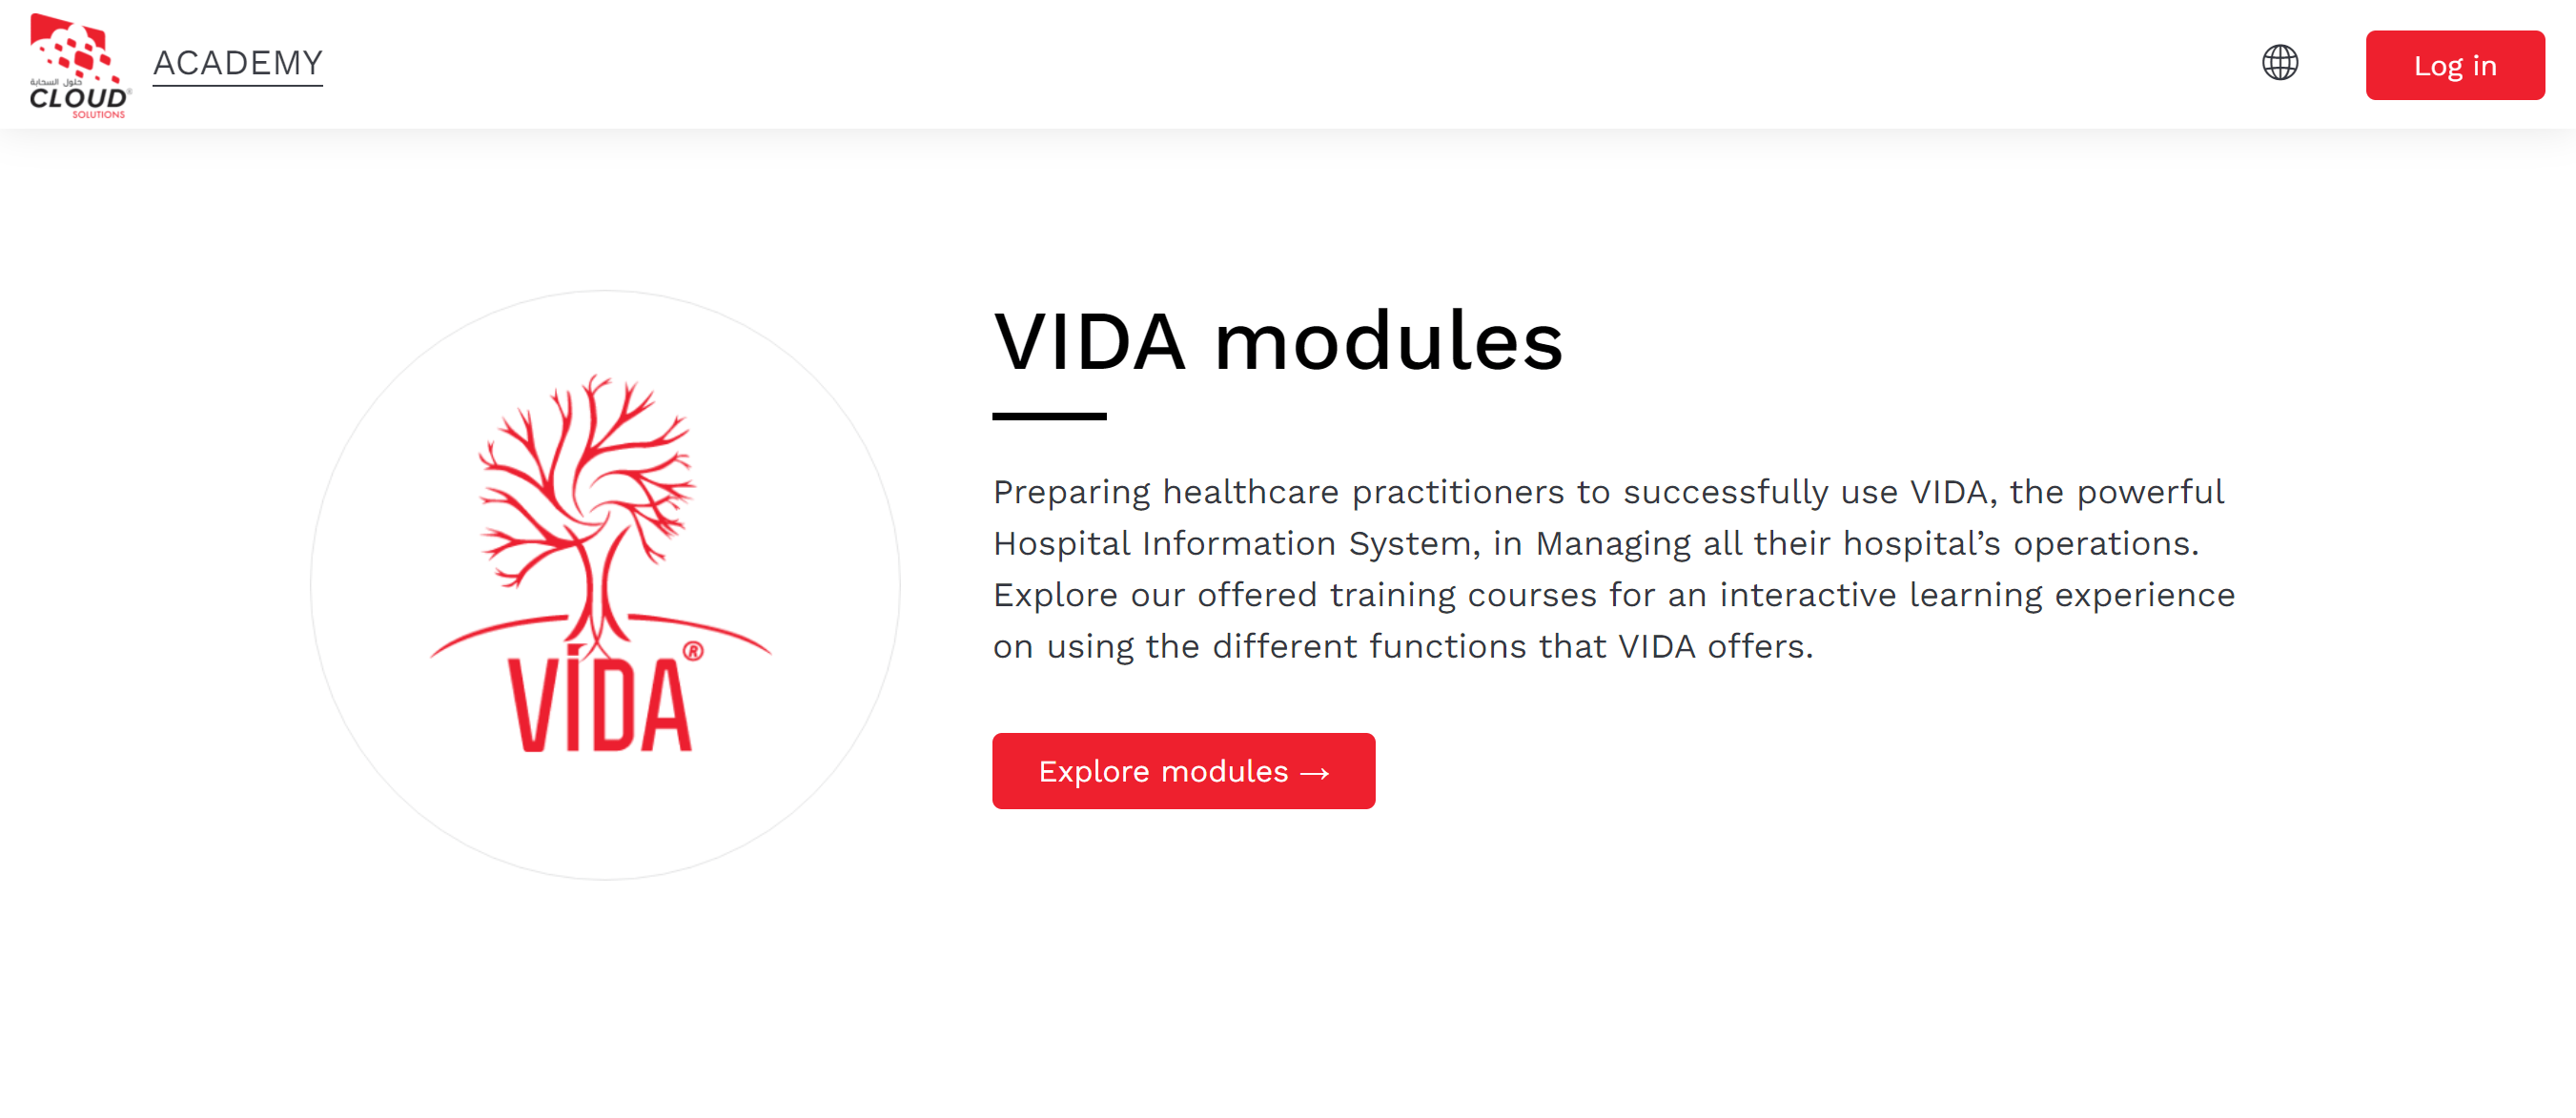 Der Einführungsbildschirm zu den VIDA-Modulen der Cloud Solutions Academy, der erklärt, worum es in den Modulen geht, und eine Handlungsaufforderungsschaltfläche mit der Aufschrift „Module erkunden“ enthält